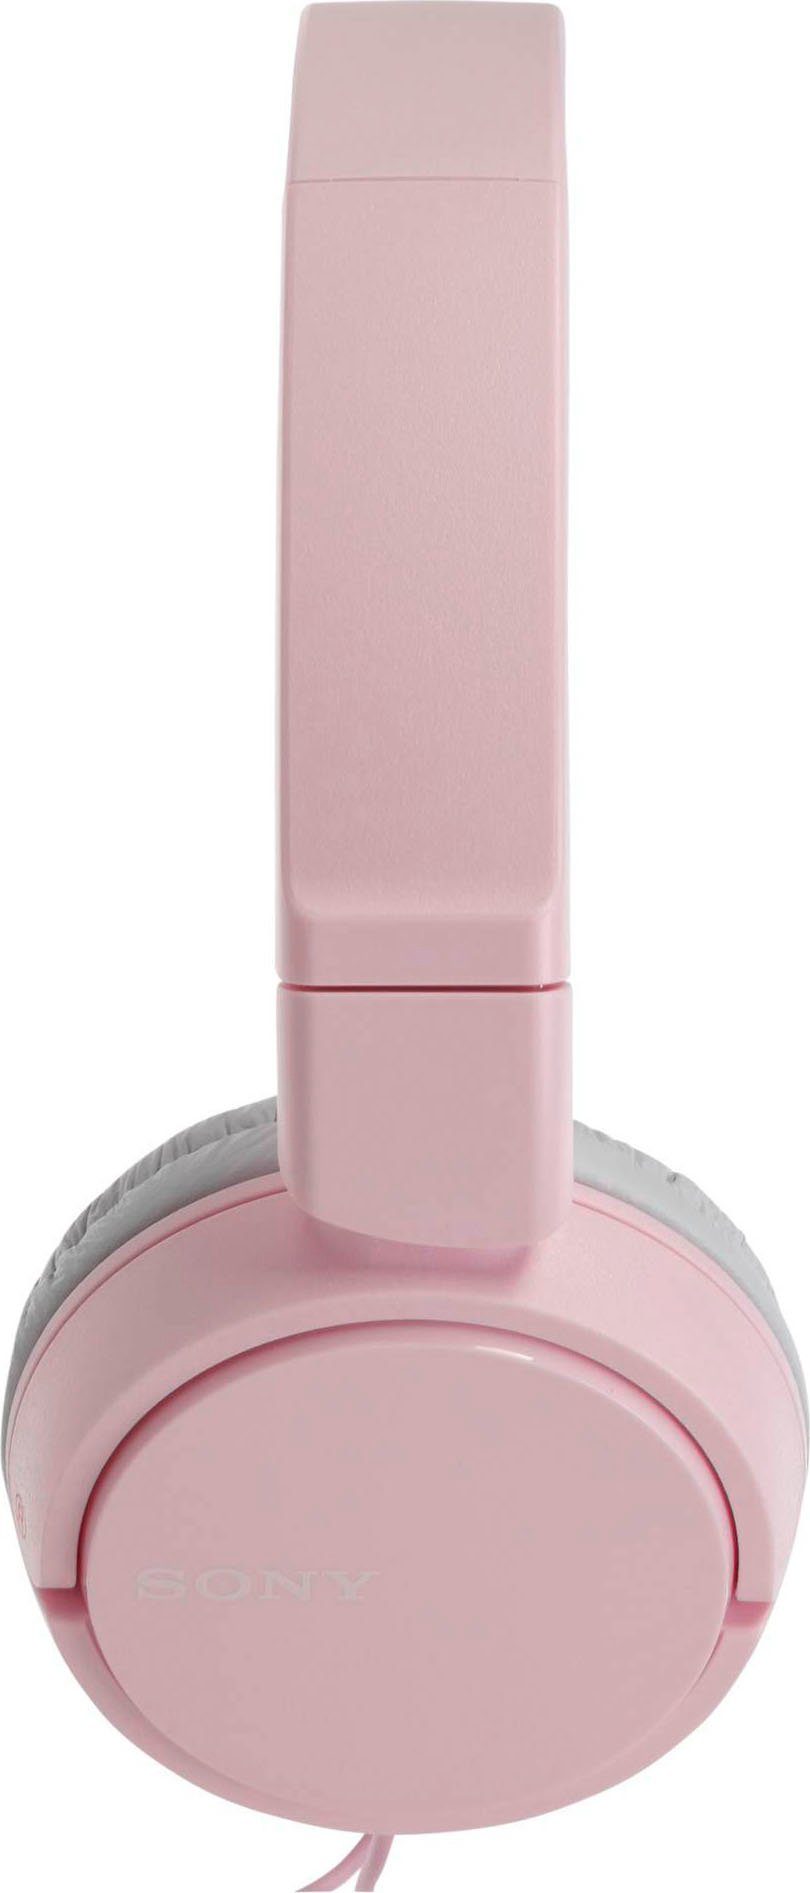 Sony MDR-ZX110AP Faltbarer Steuerung Headsetfunktion) (Freisprechfunktion, On-Ear-Kopfhörer Musik, Anrufe integrierte pink und für mit